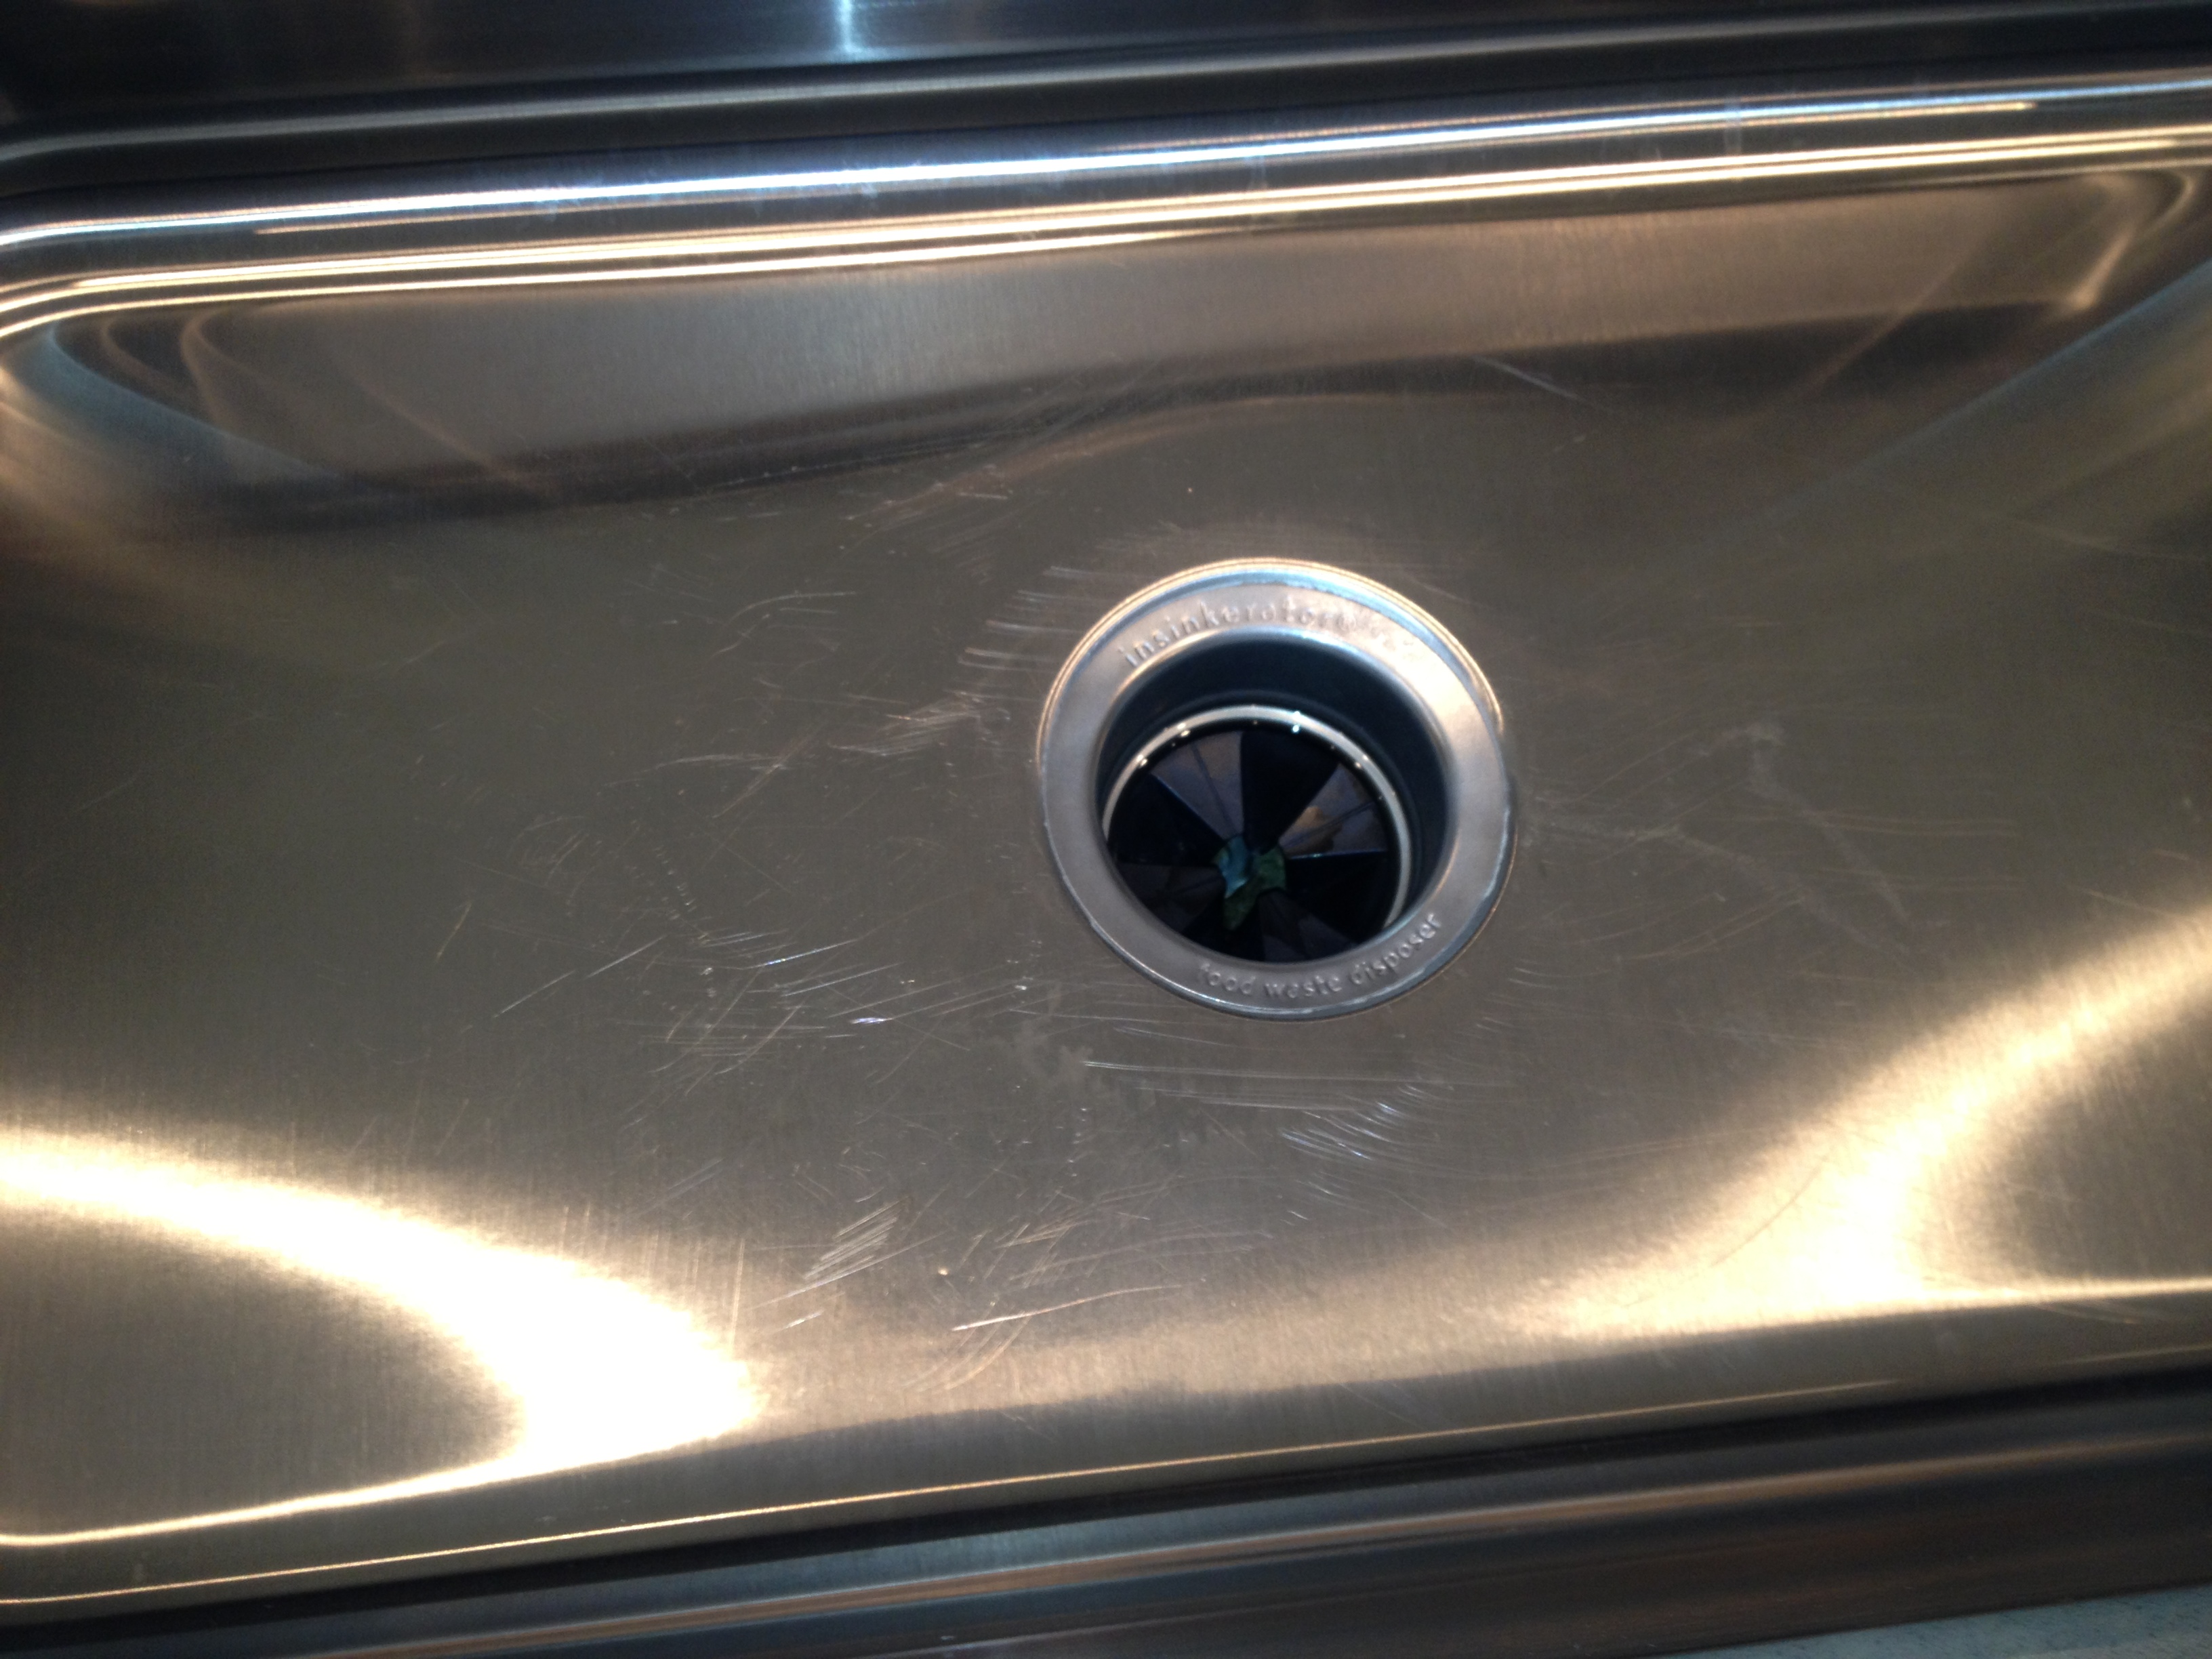 refinish stainless steel kitchen sink